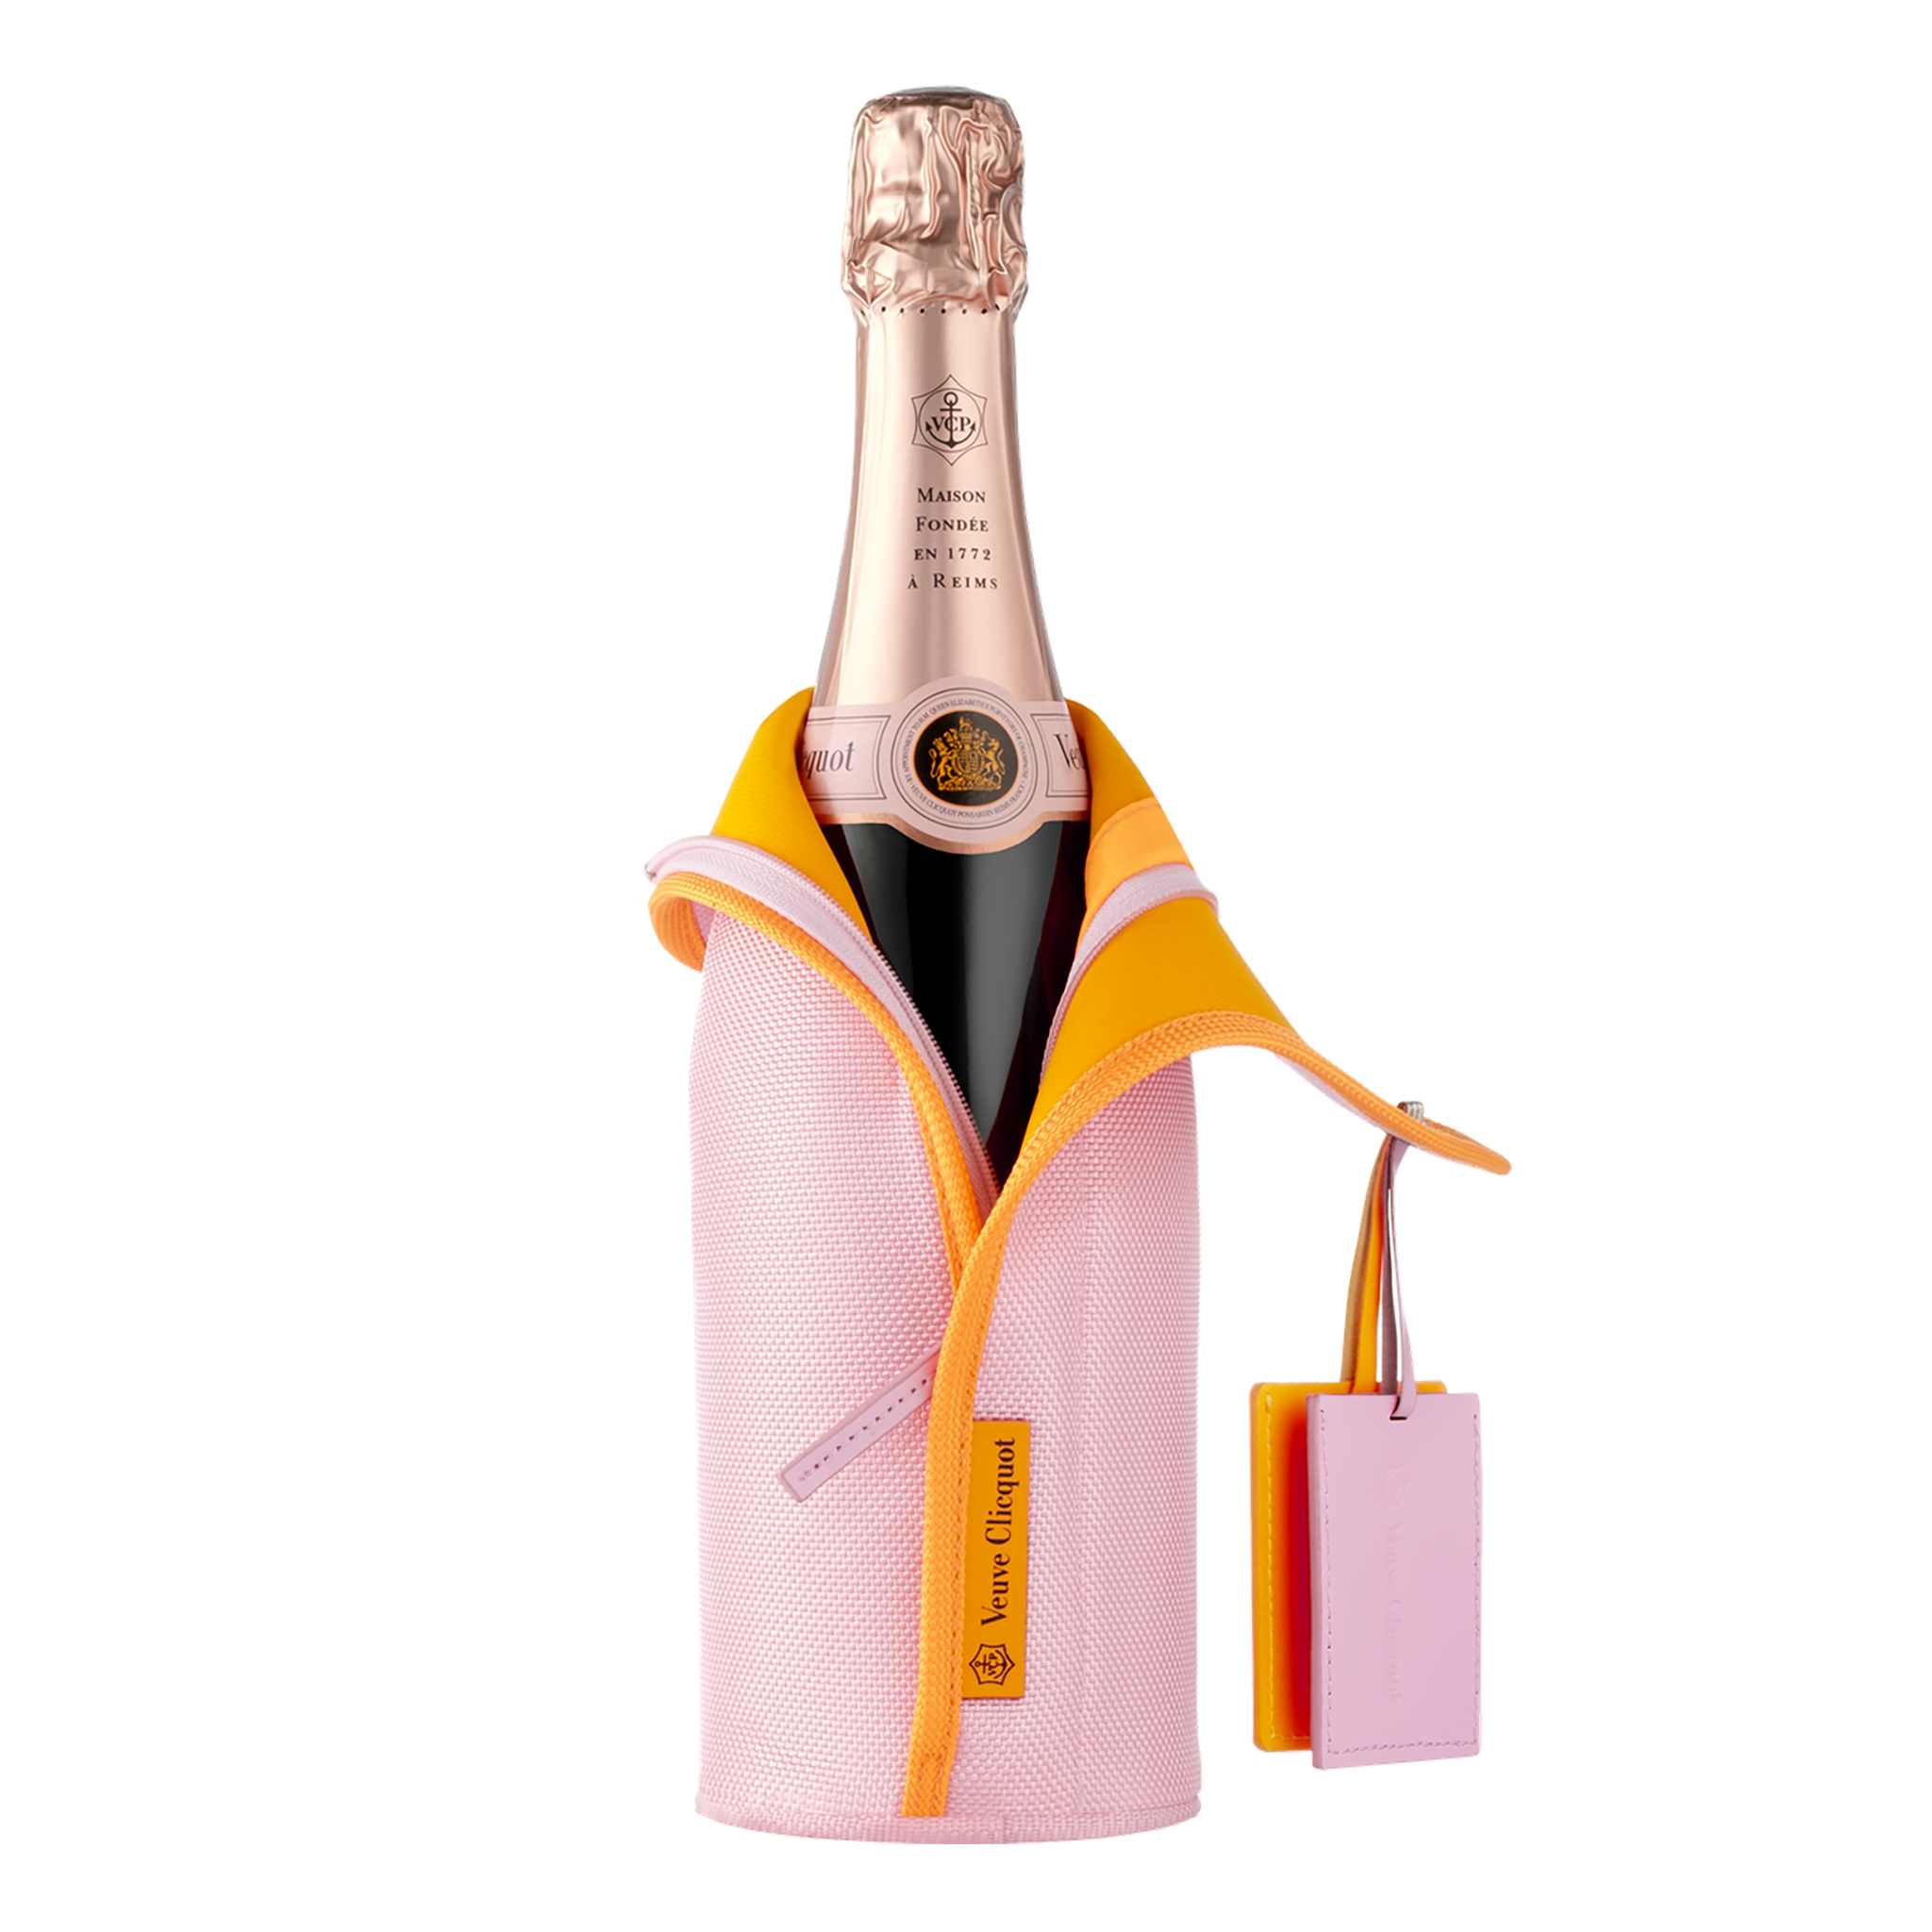 Бутылка вдовы клико. Шампанское Veuve Clicquot Rose. Шампанское "Veuve Clicquot Ponsardin" (вдова Клико Понсардин). Ice Jacket Veuve Clicquot. Veuve Clicquot Pink.